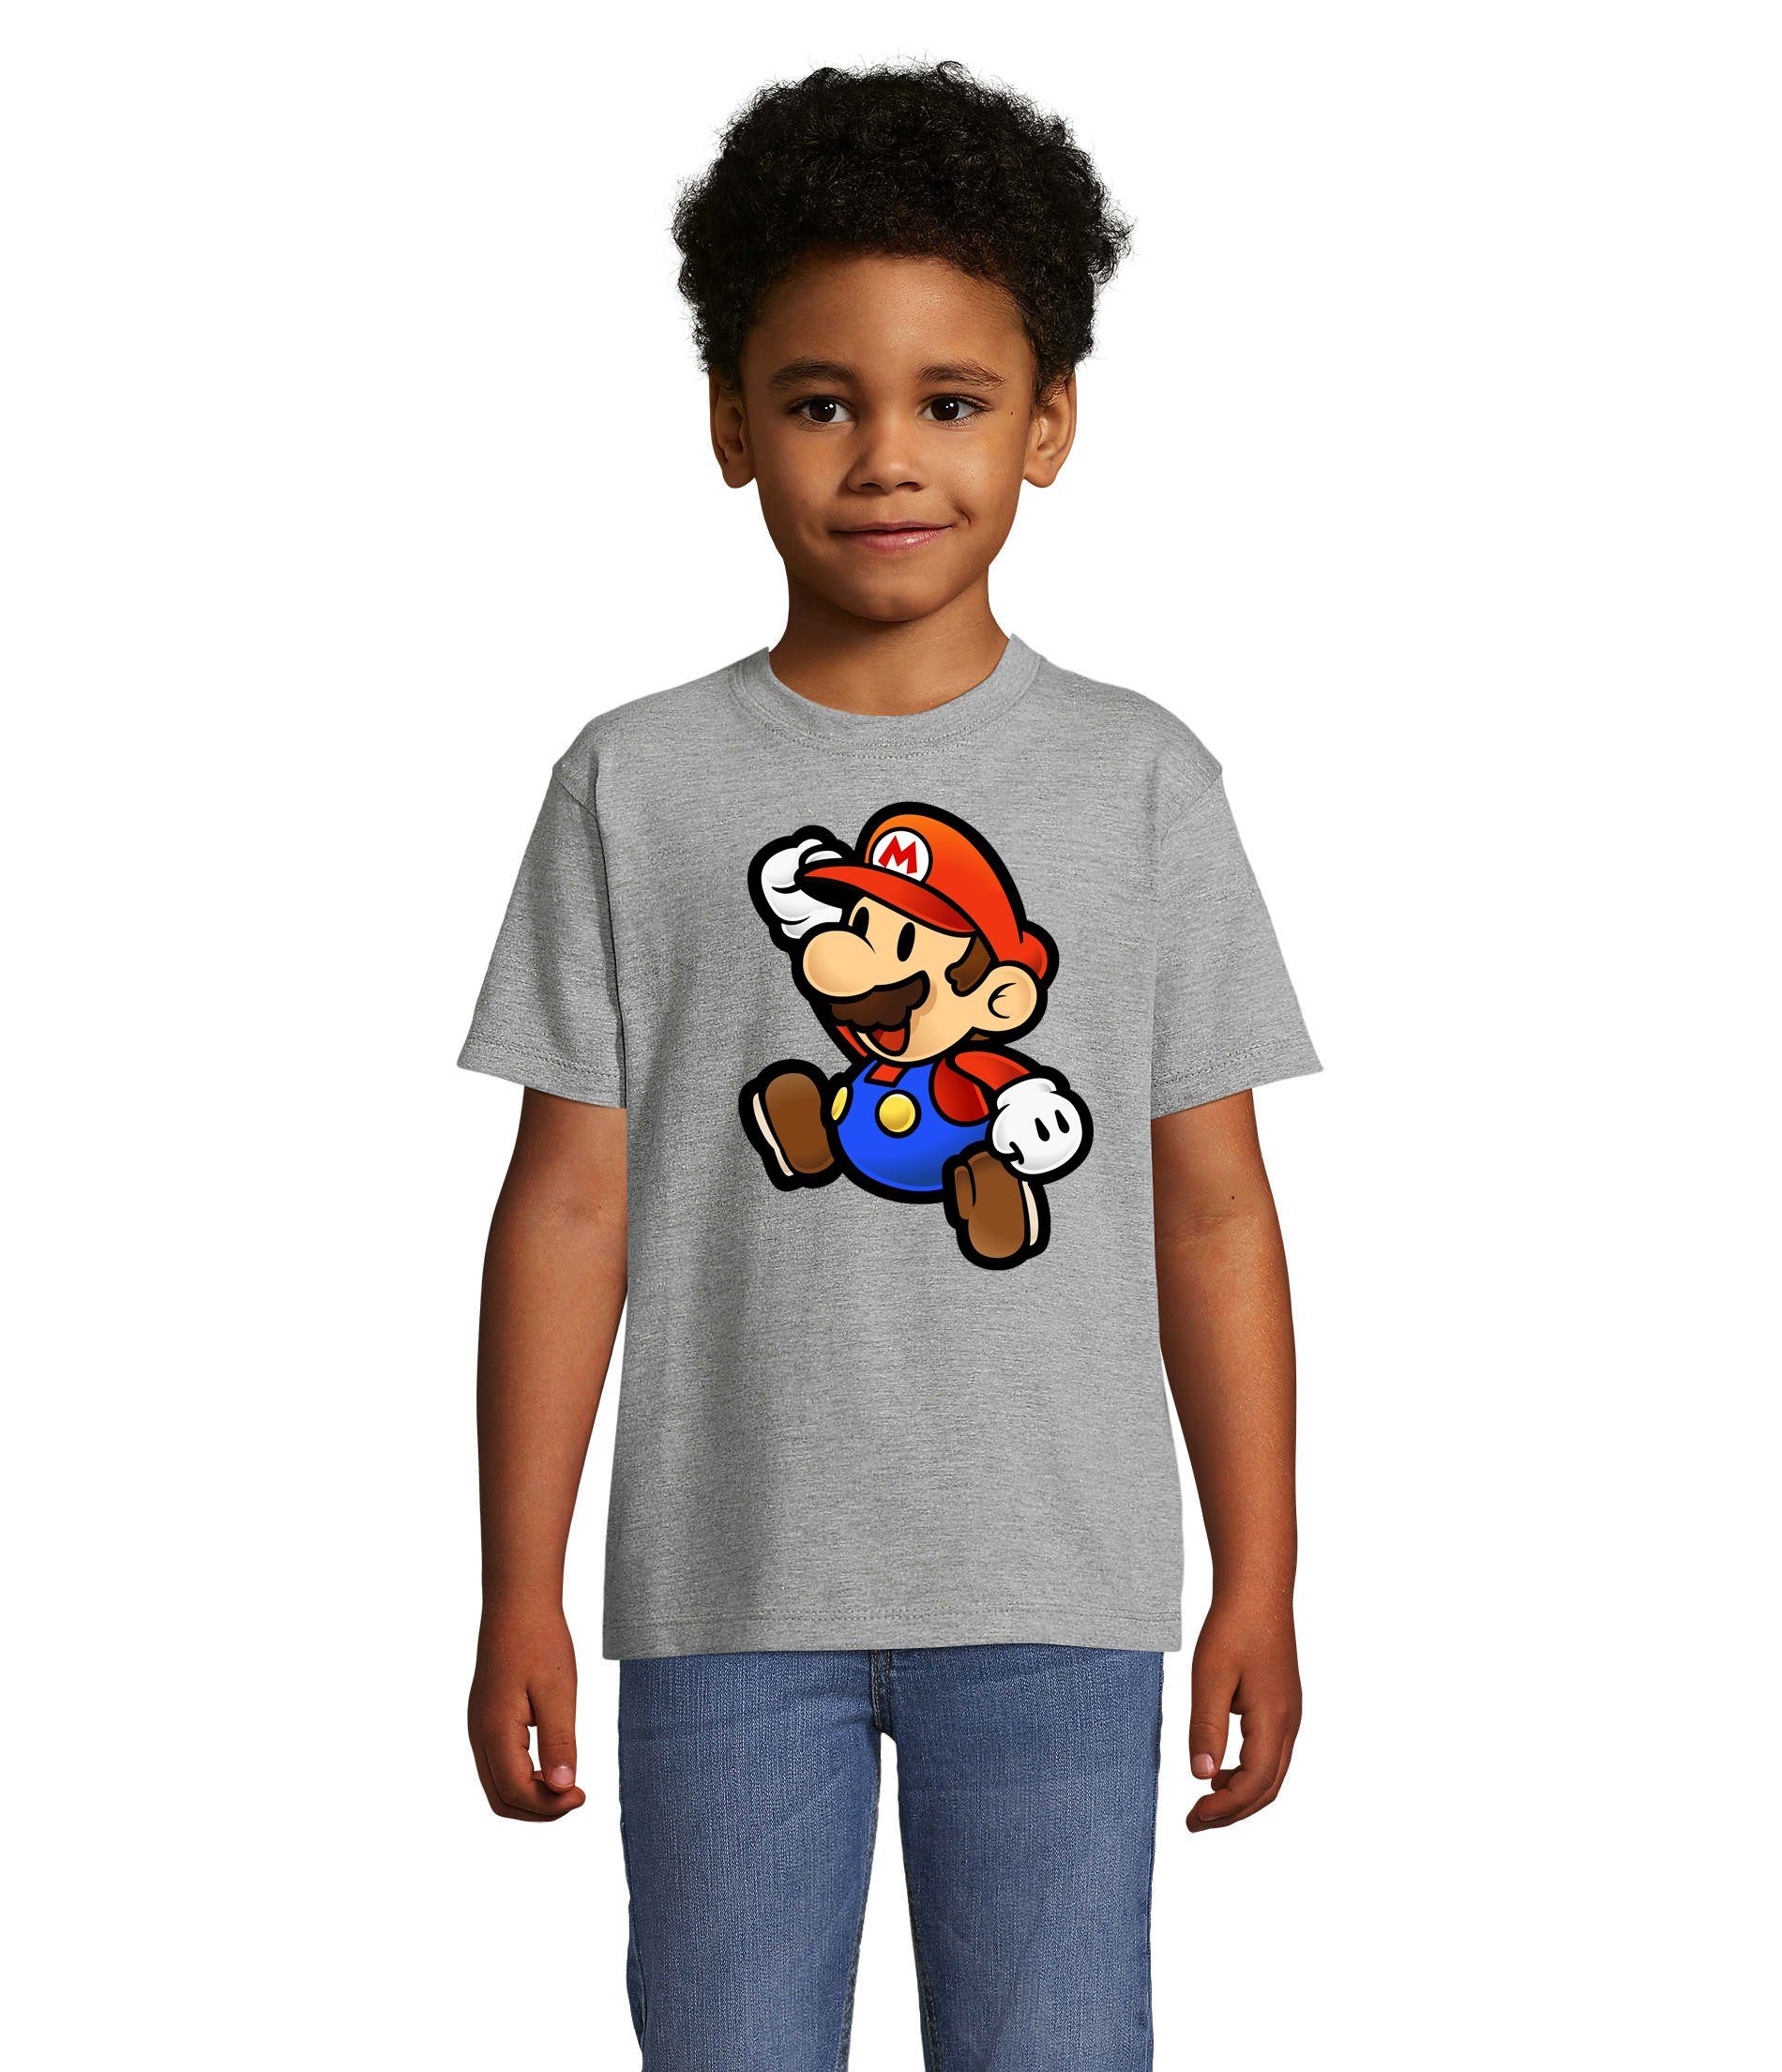 Blondie & Brownie T-Shirt Kinder Jungen & Mädchen Mario Nintendo Gaming Luigi Yoshi Super in vielen Farben Grau